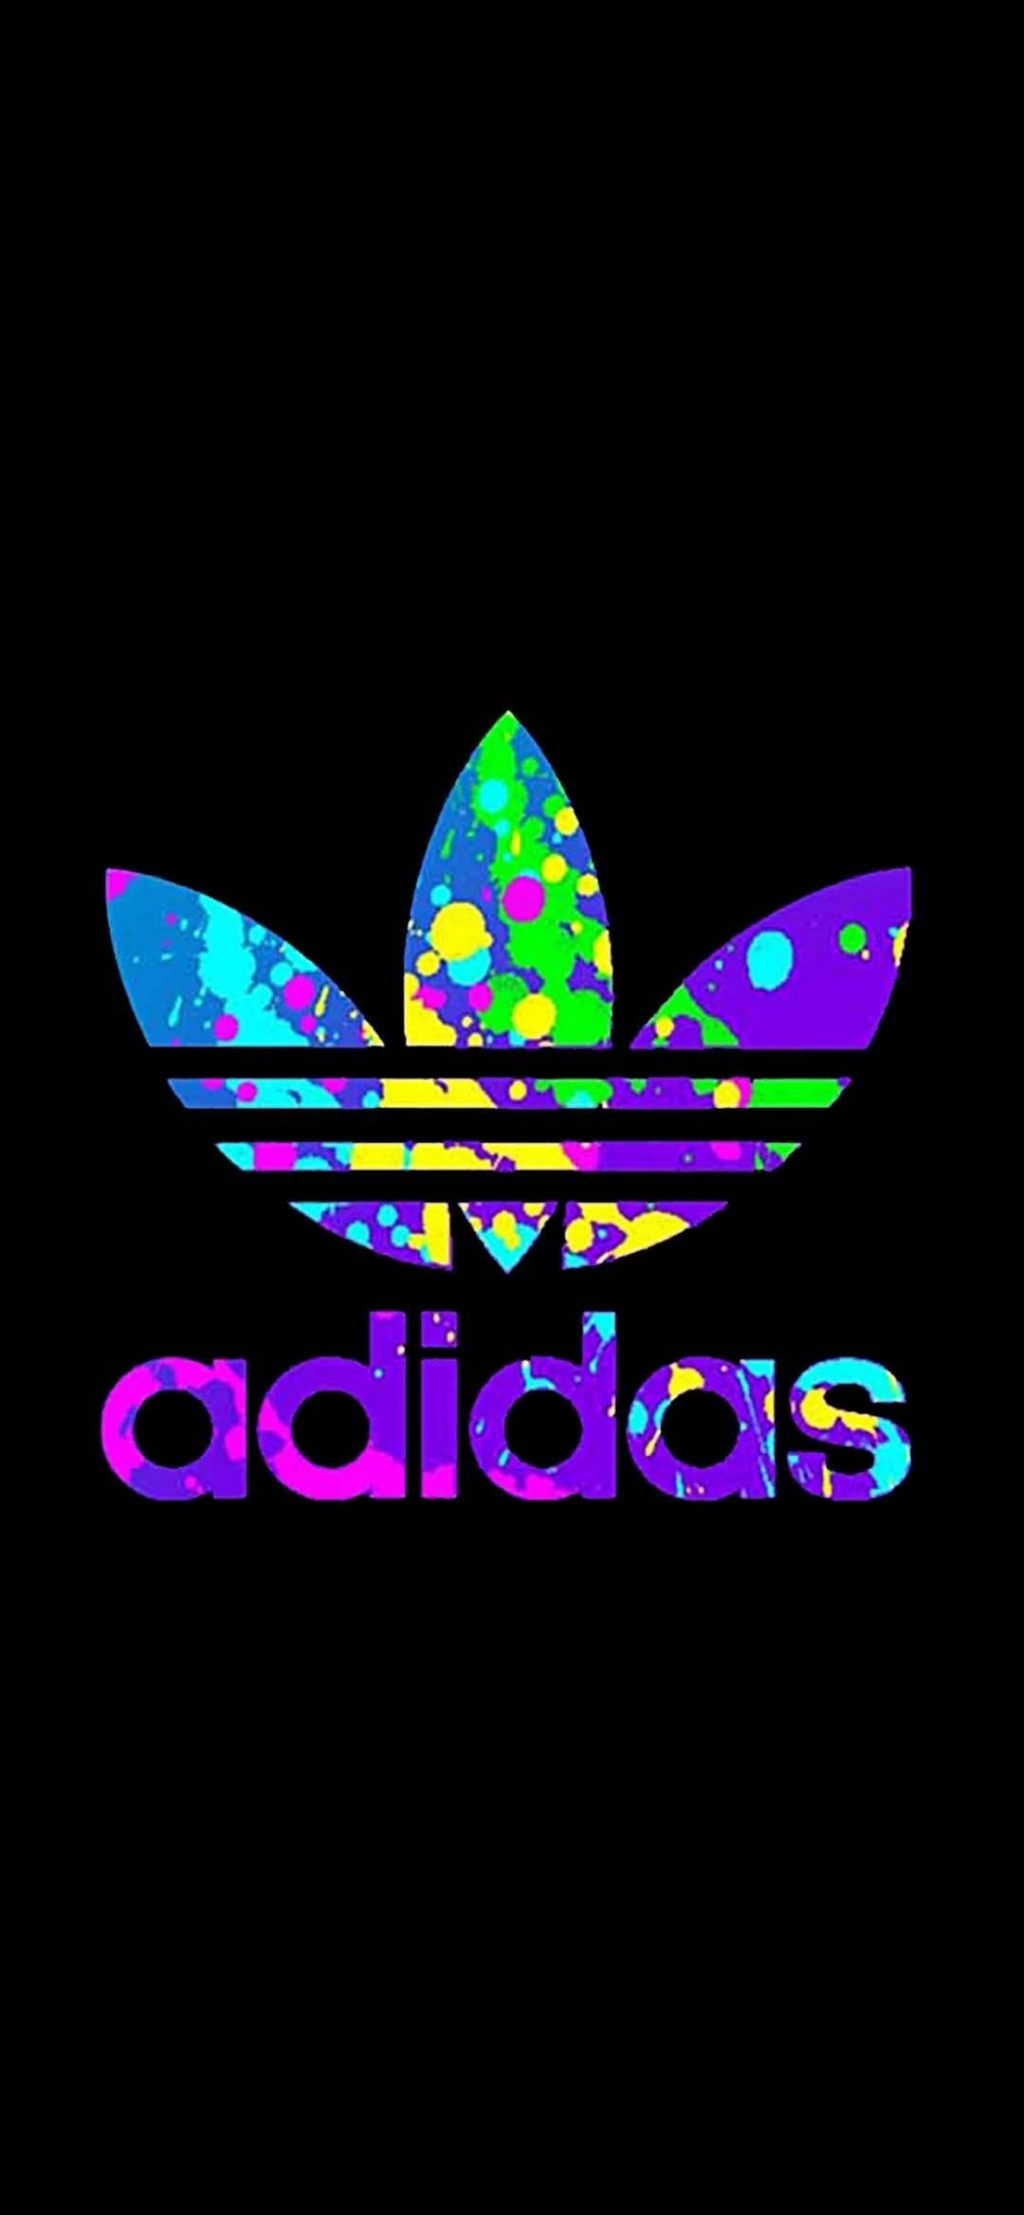 阿迪达斯adidas酷帅运动品牌手机壁纸